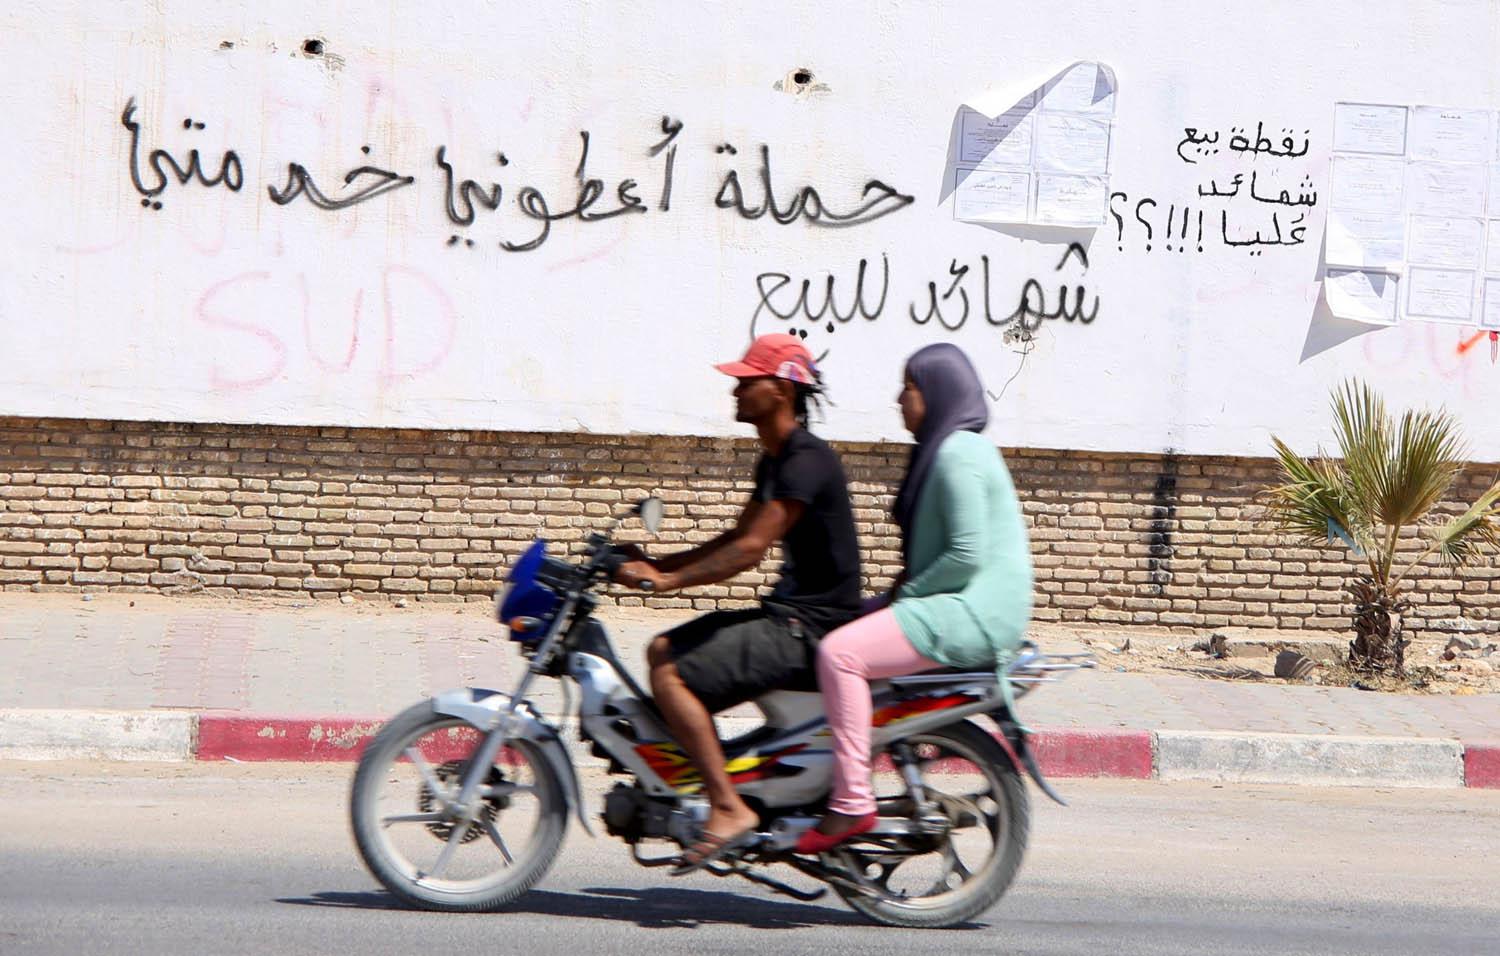 تونسيان يمران بالقرب من سياج في مدينة المتلوي